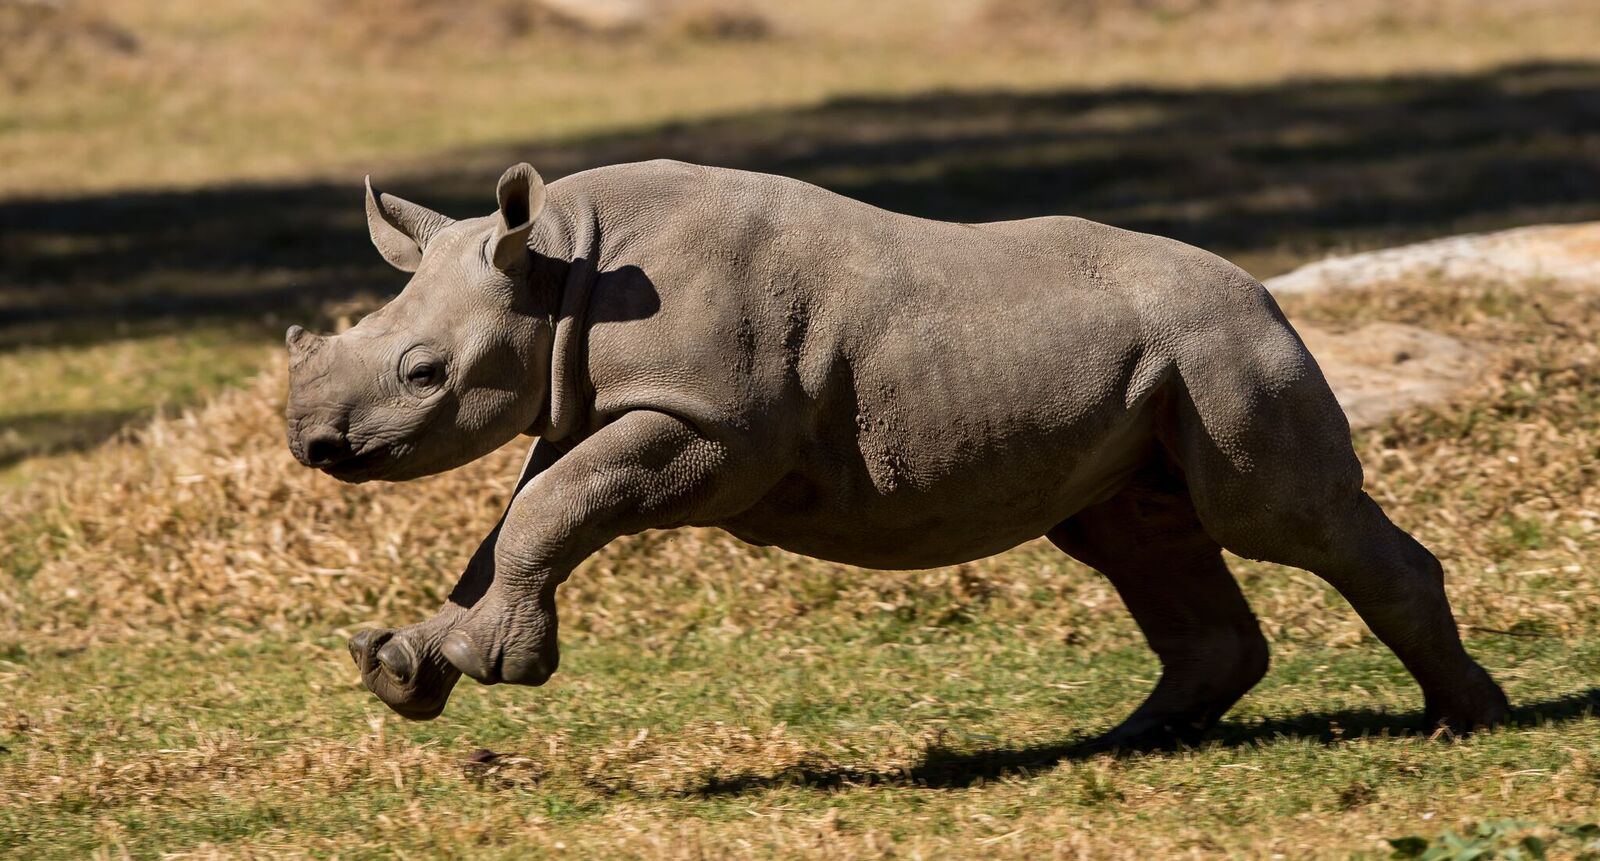 Black rhino calf running